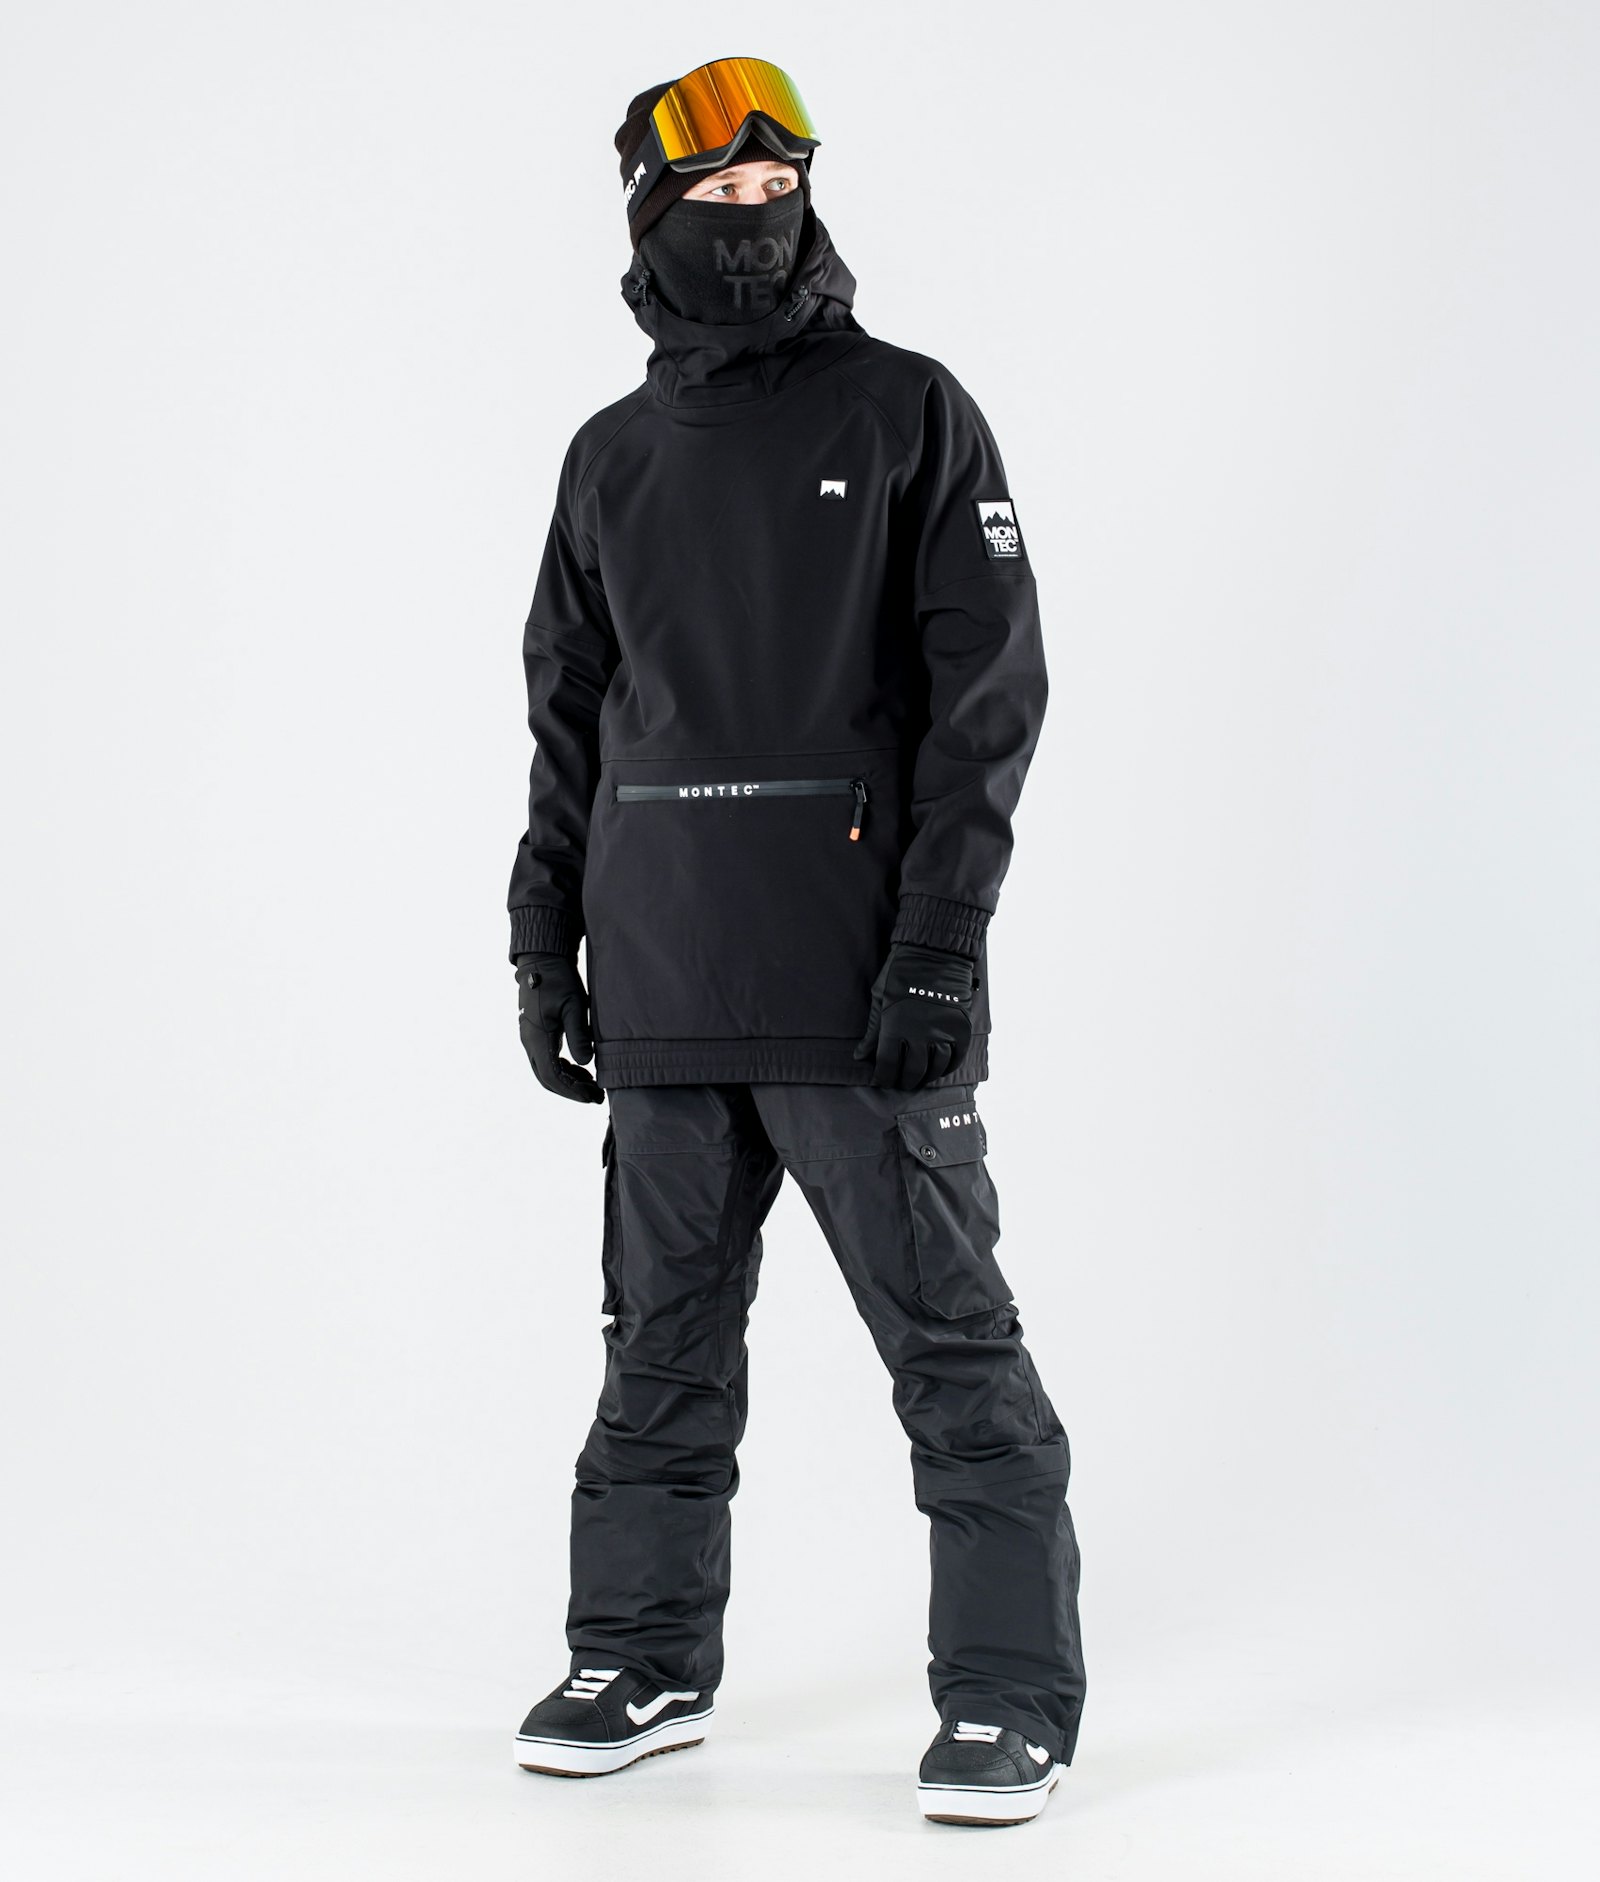 Tempest 2019 Snowboard jas Heren Black